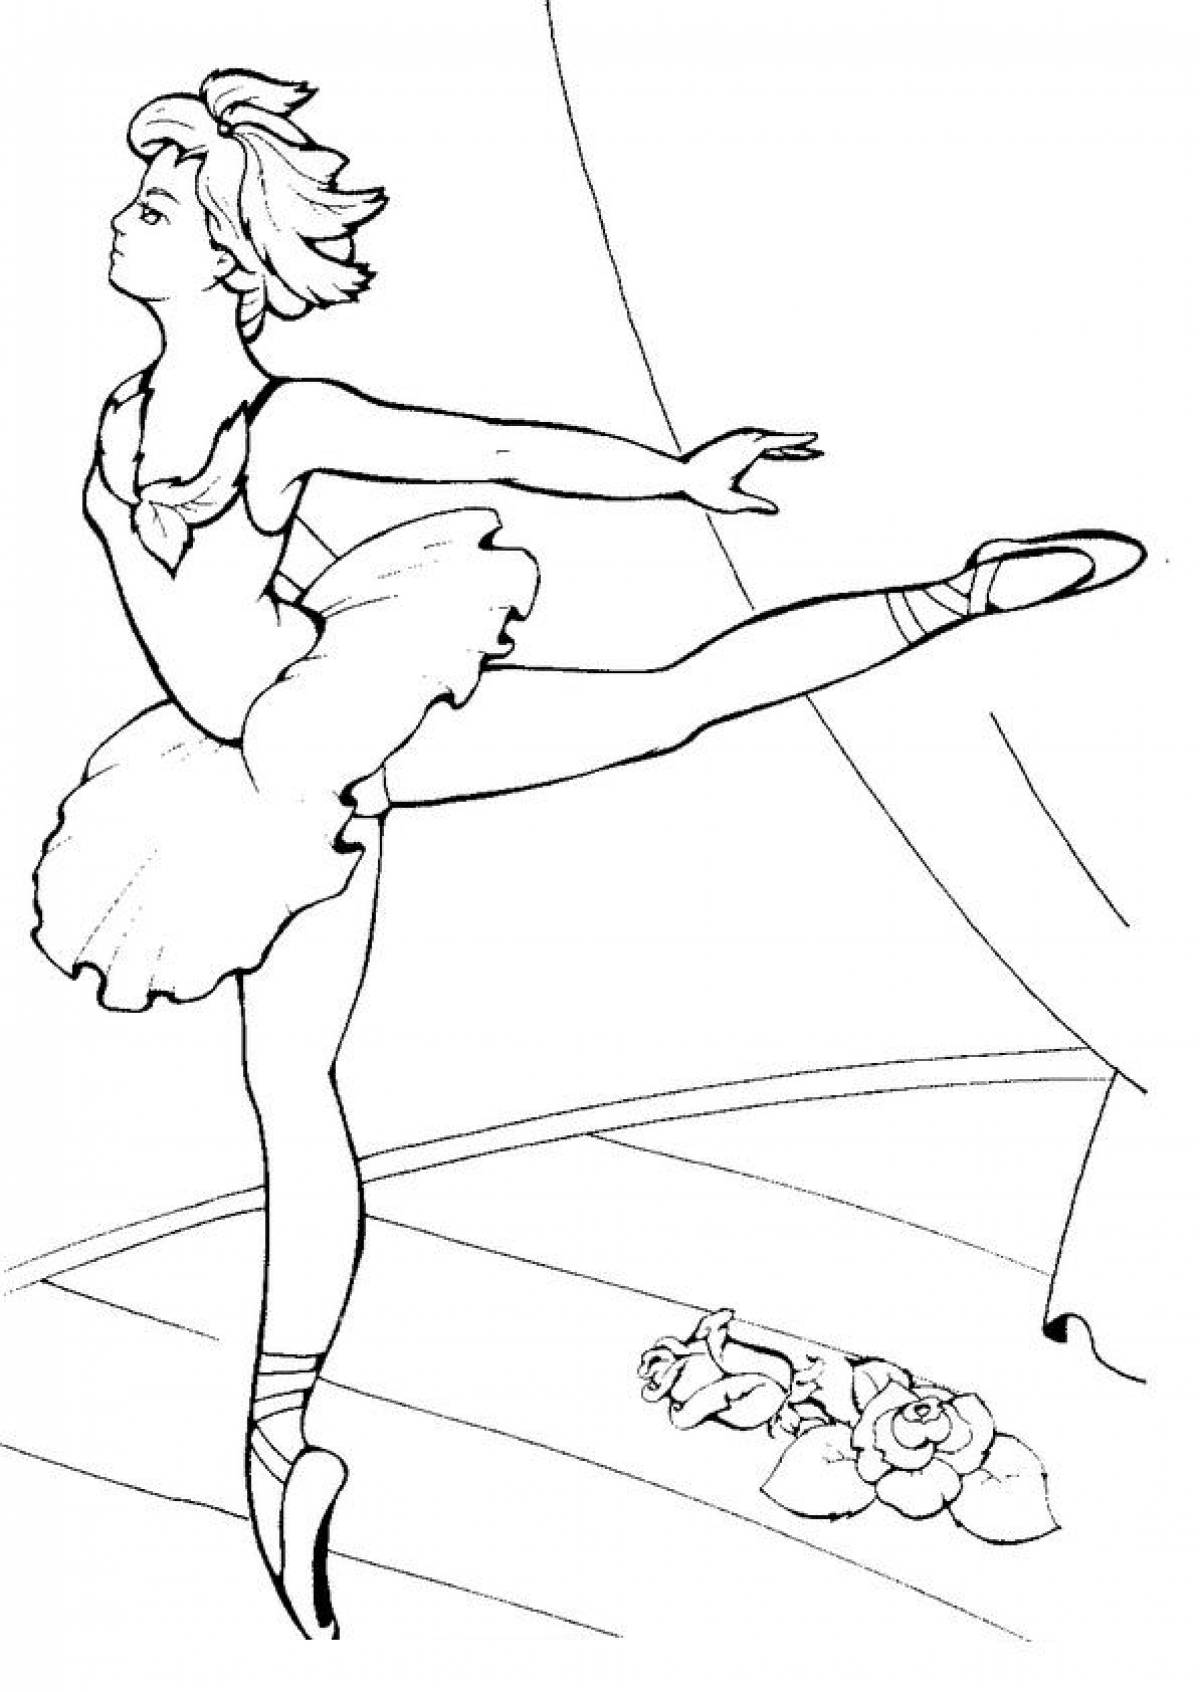 Балерина раскраска для детей